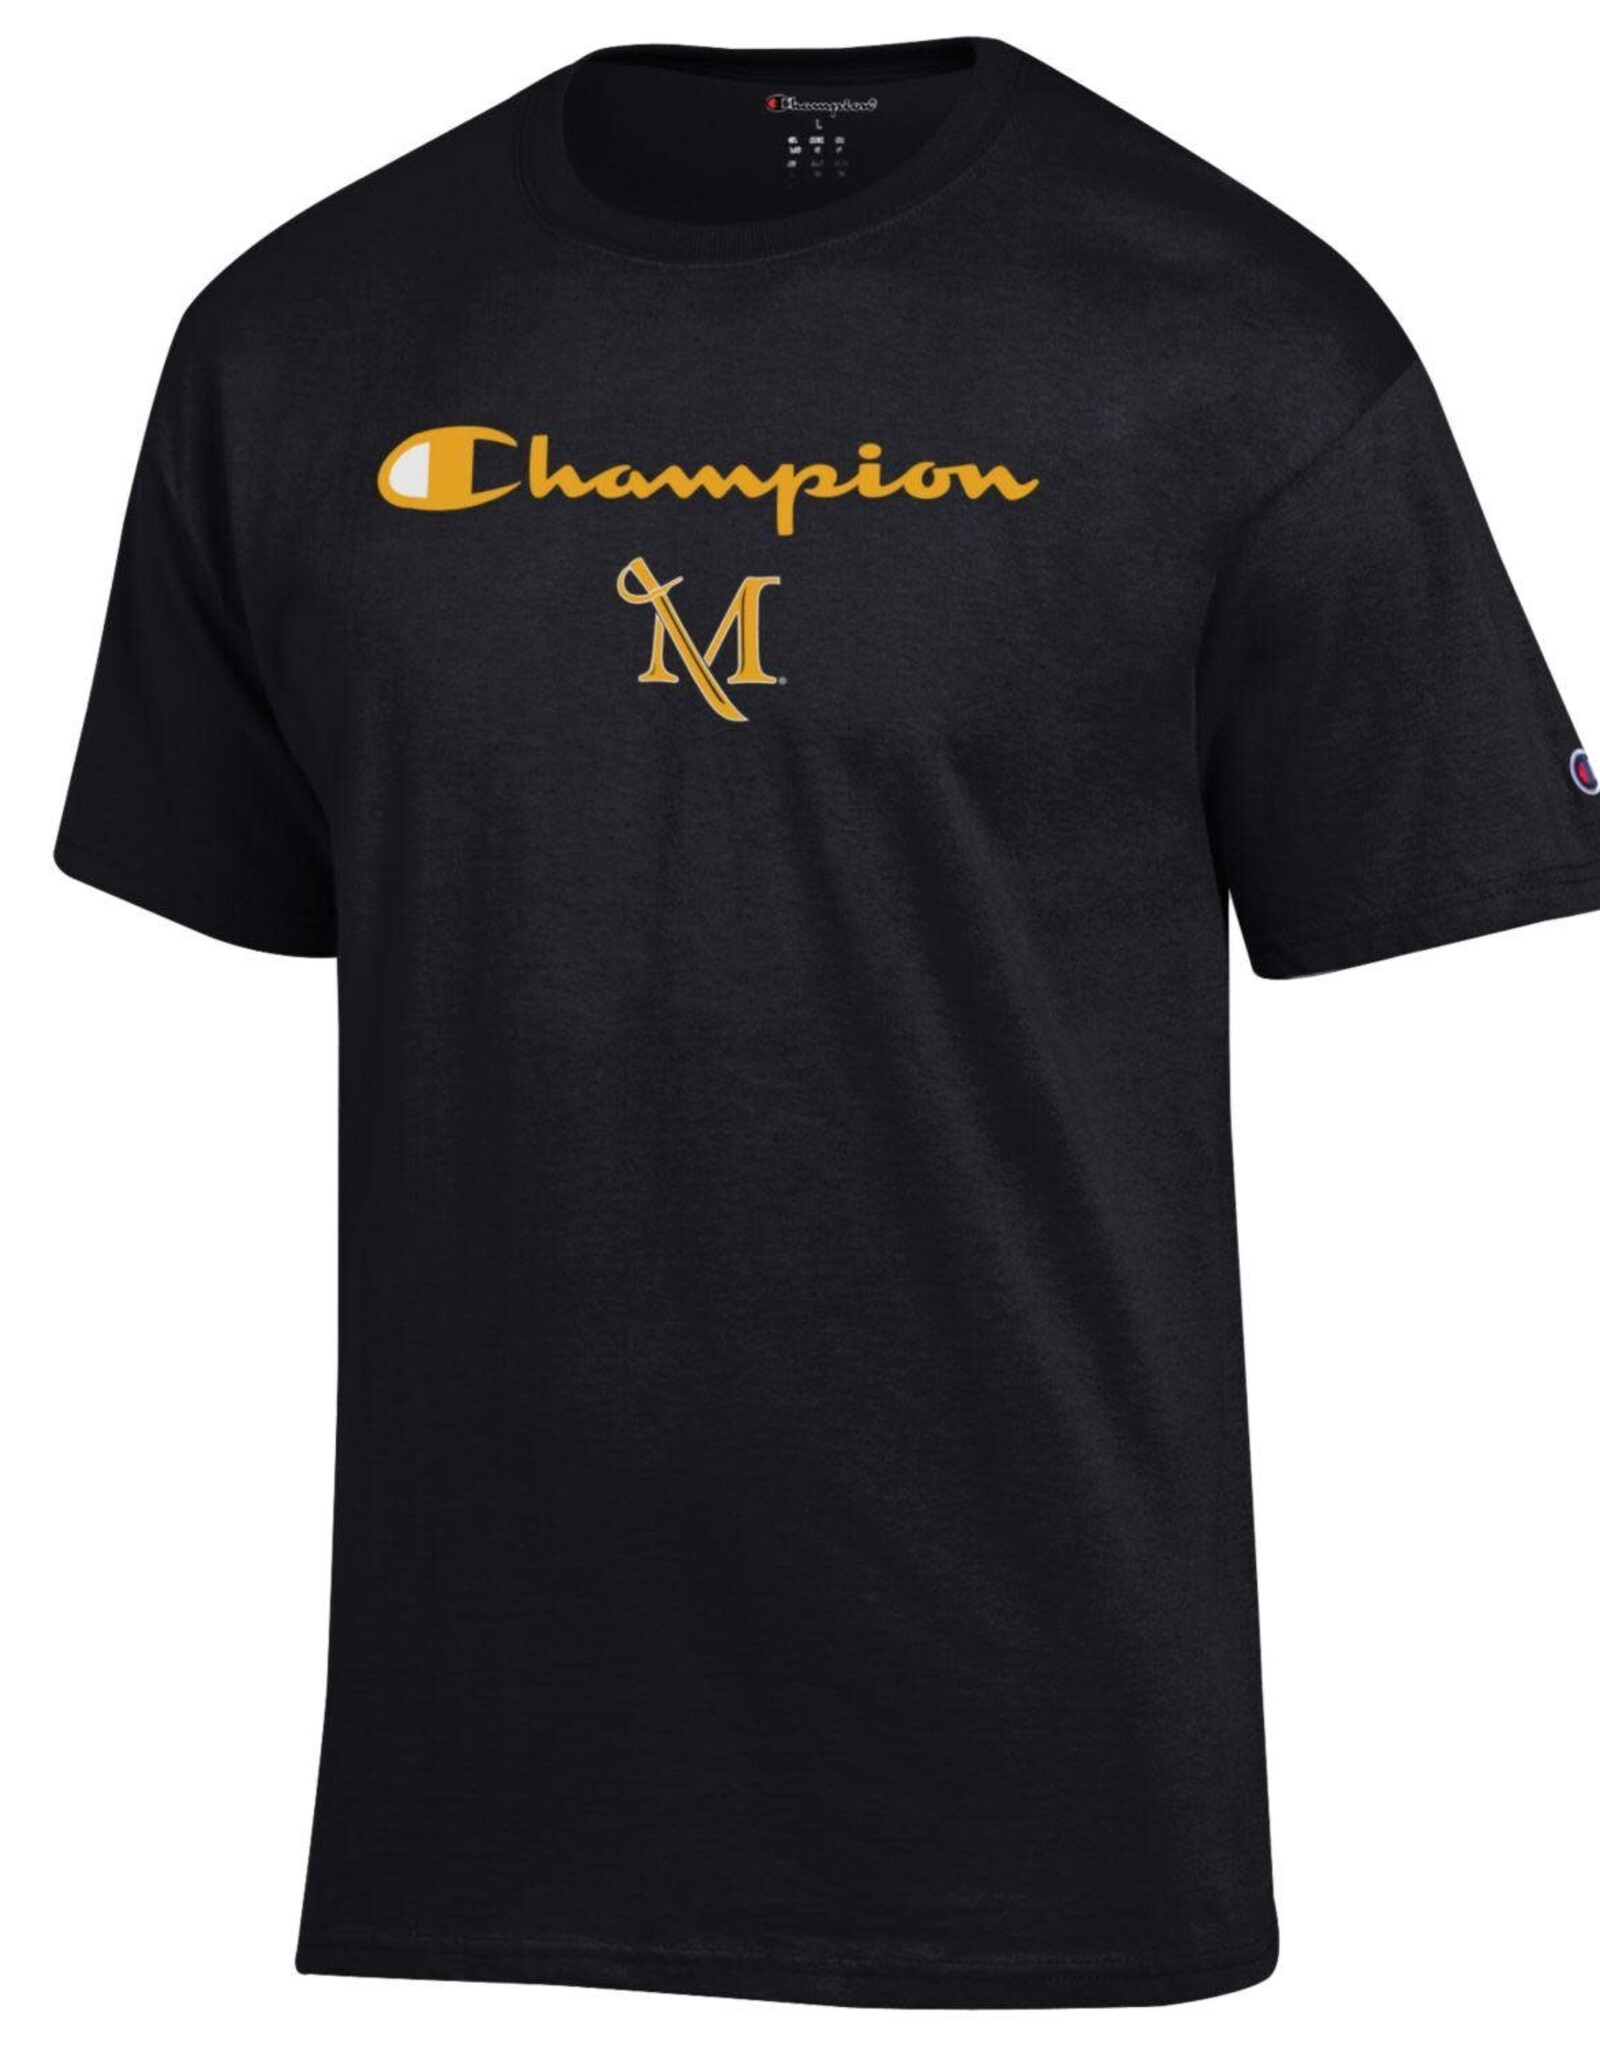 Champion Champion Logo Millersville Tee